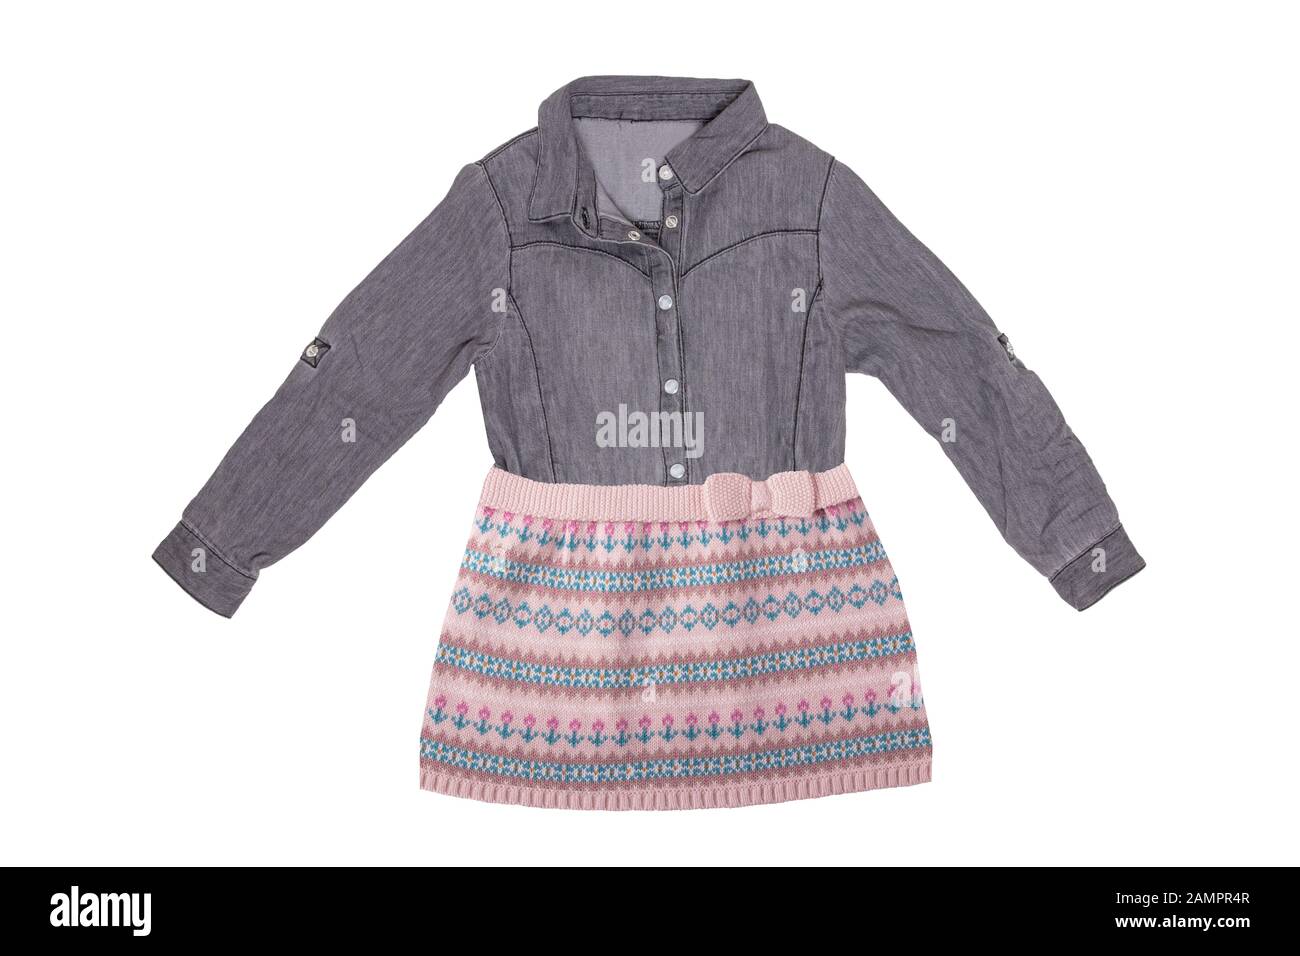 Kleidung für Kinder. Collage einer schönen grauen, sportlichen Bluse für Mädchen mit einem farbenfrohen, kurzen pinkfarbenen Rock, der auf weißem Hintergrund isoliert ist. Kinder spr Stockfoto